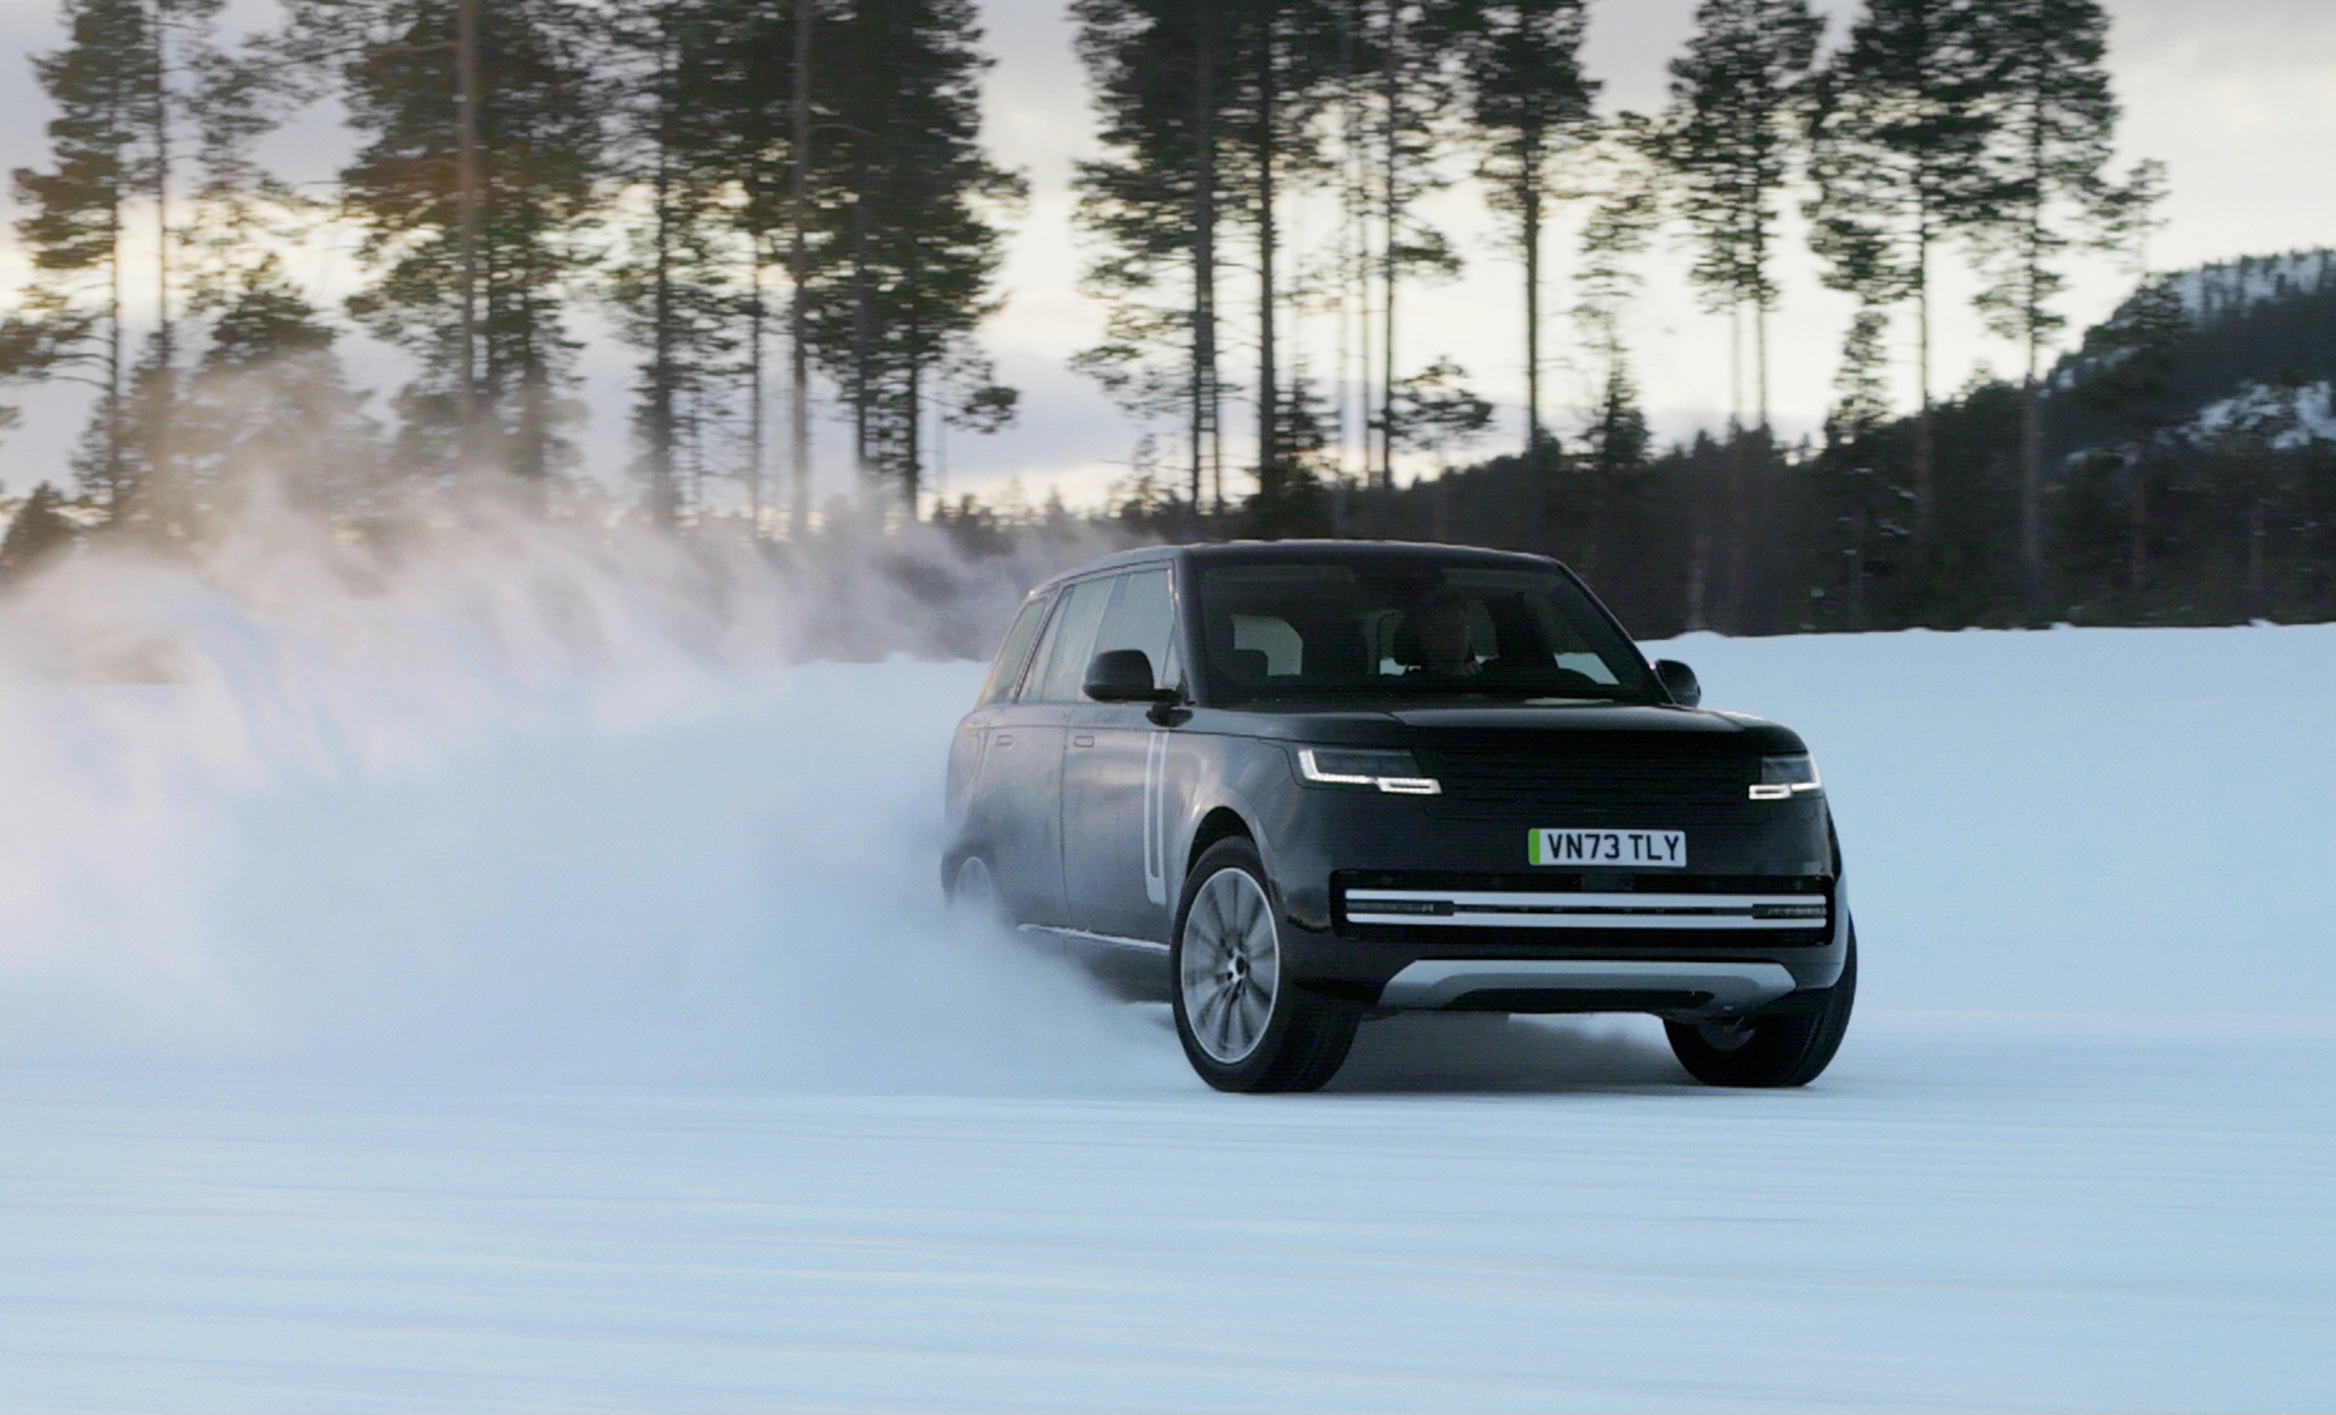 Schauen Sie sich zunächst den vollelektrischen Range Rover an, der in Schweden getestet wird